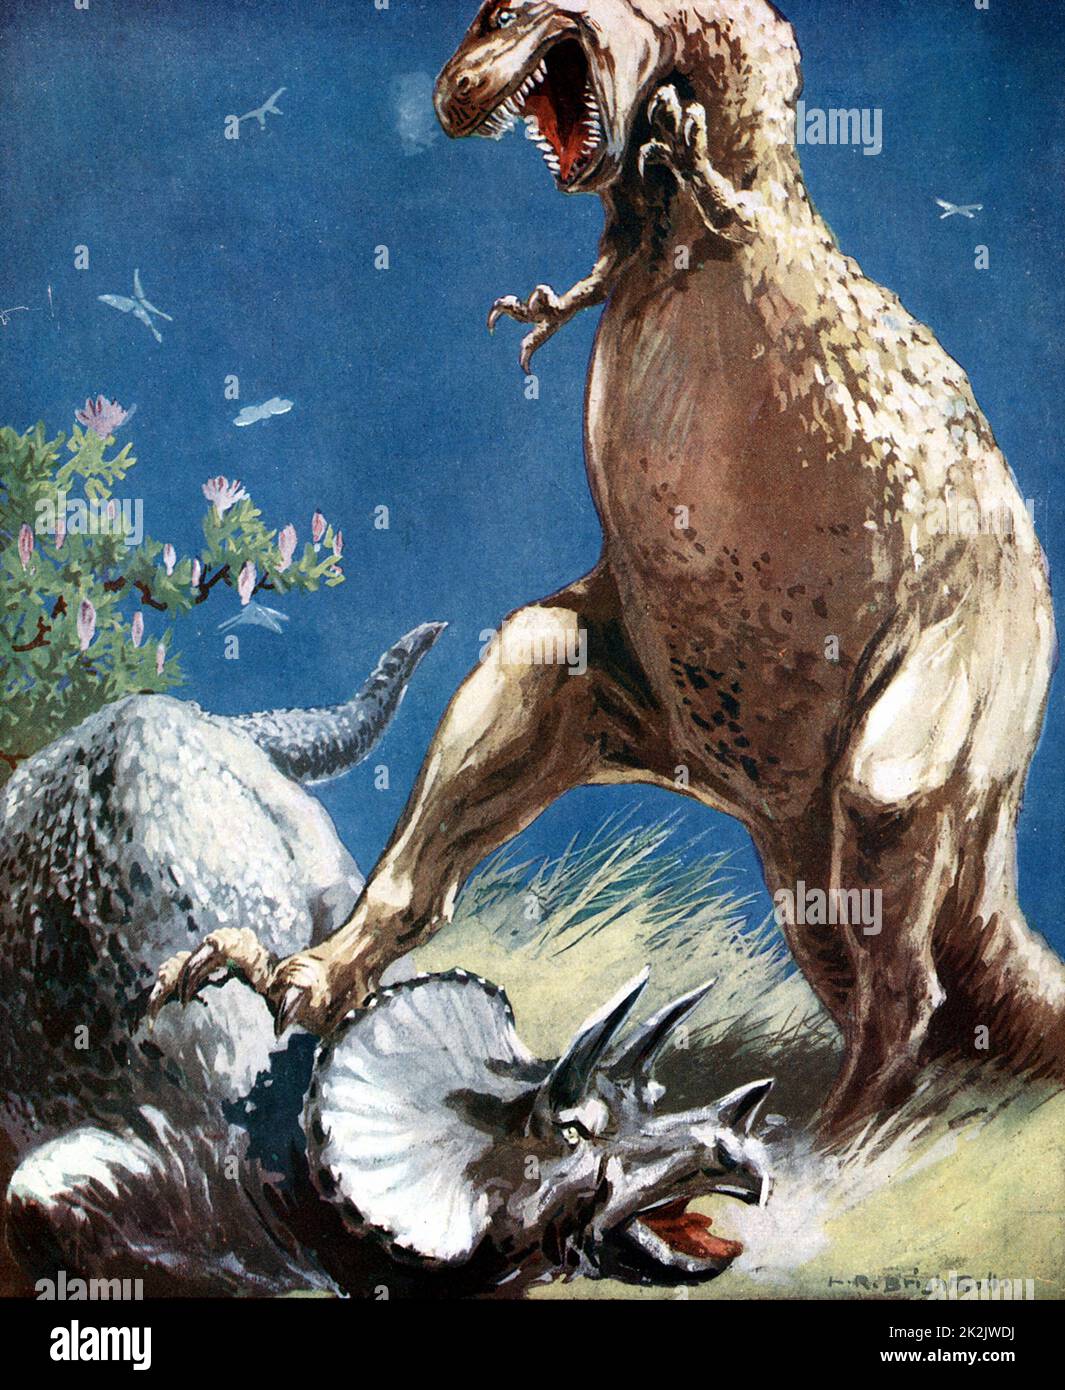 Triceratops, un dinosauro cornuto, trattenuto dal tirannosauro. Ricostruzione artistica della lotta tra due rettili giganti dell'era mesozoica (225.000.000 -65.000.000 anni fa) pubblicato nel c1920 Foto Stock